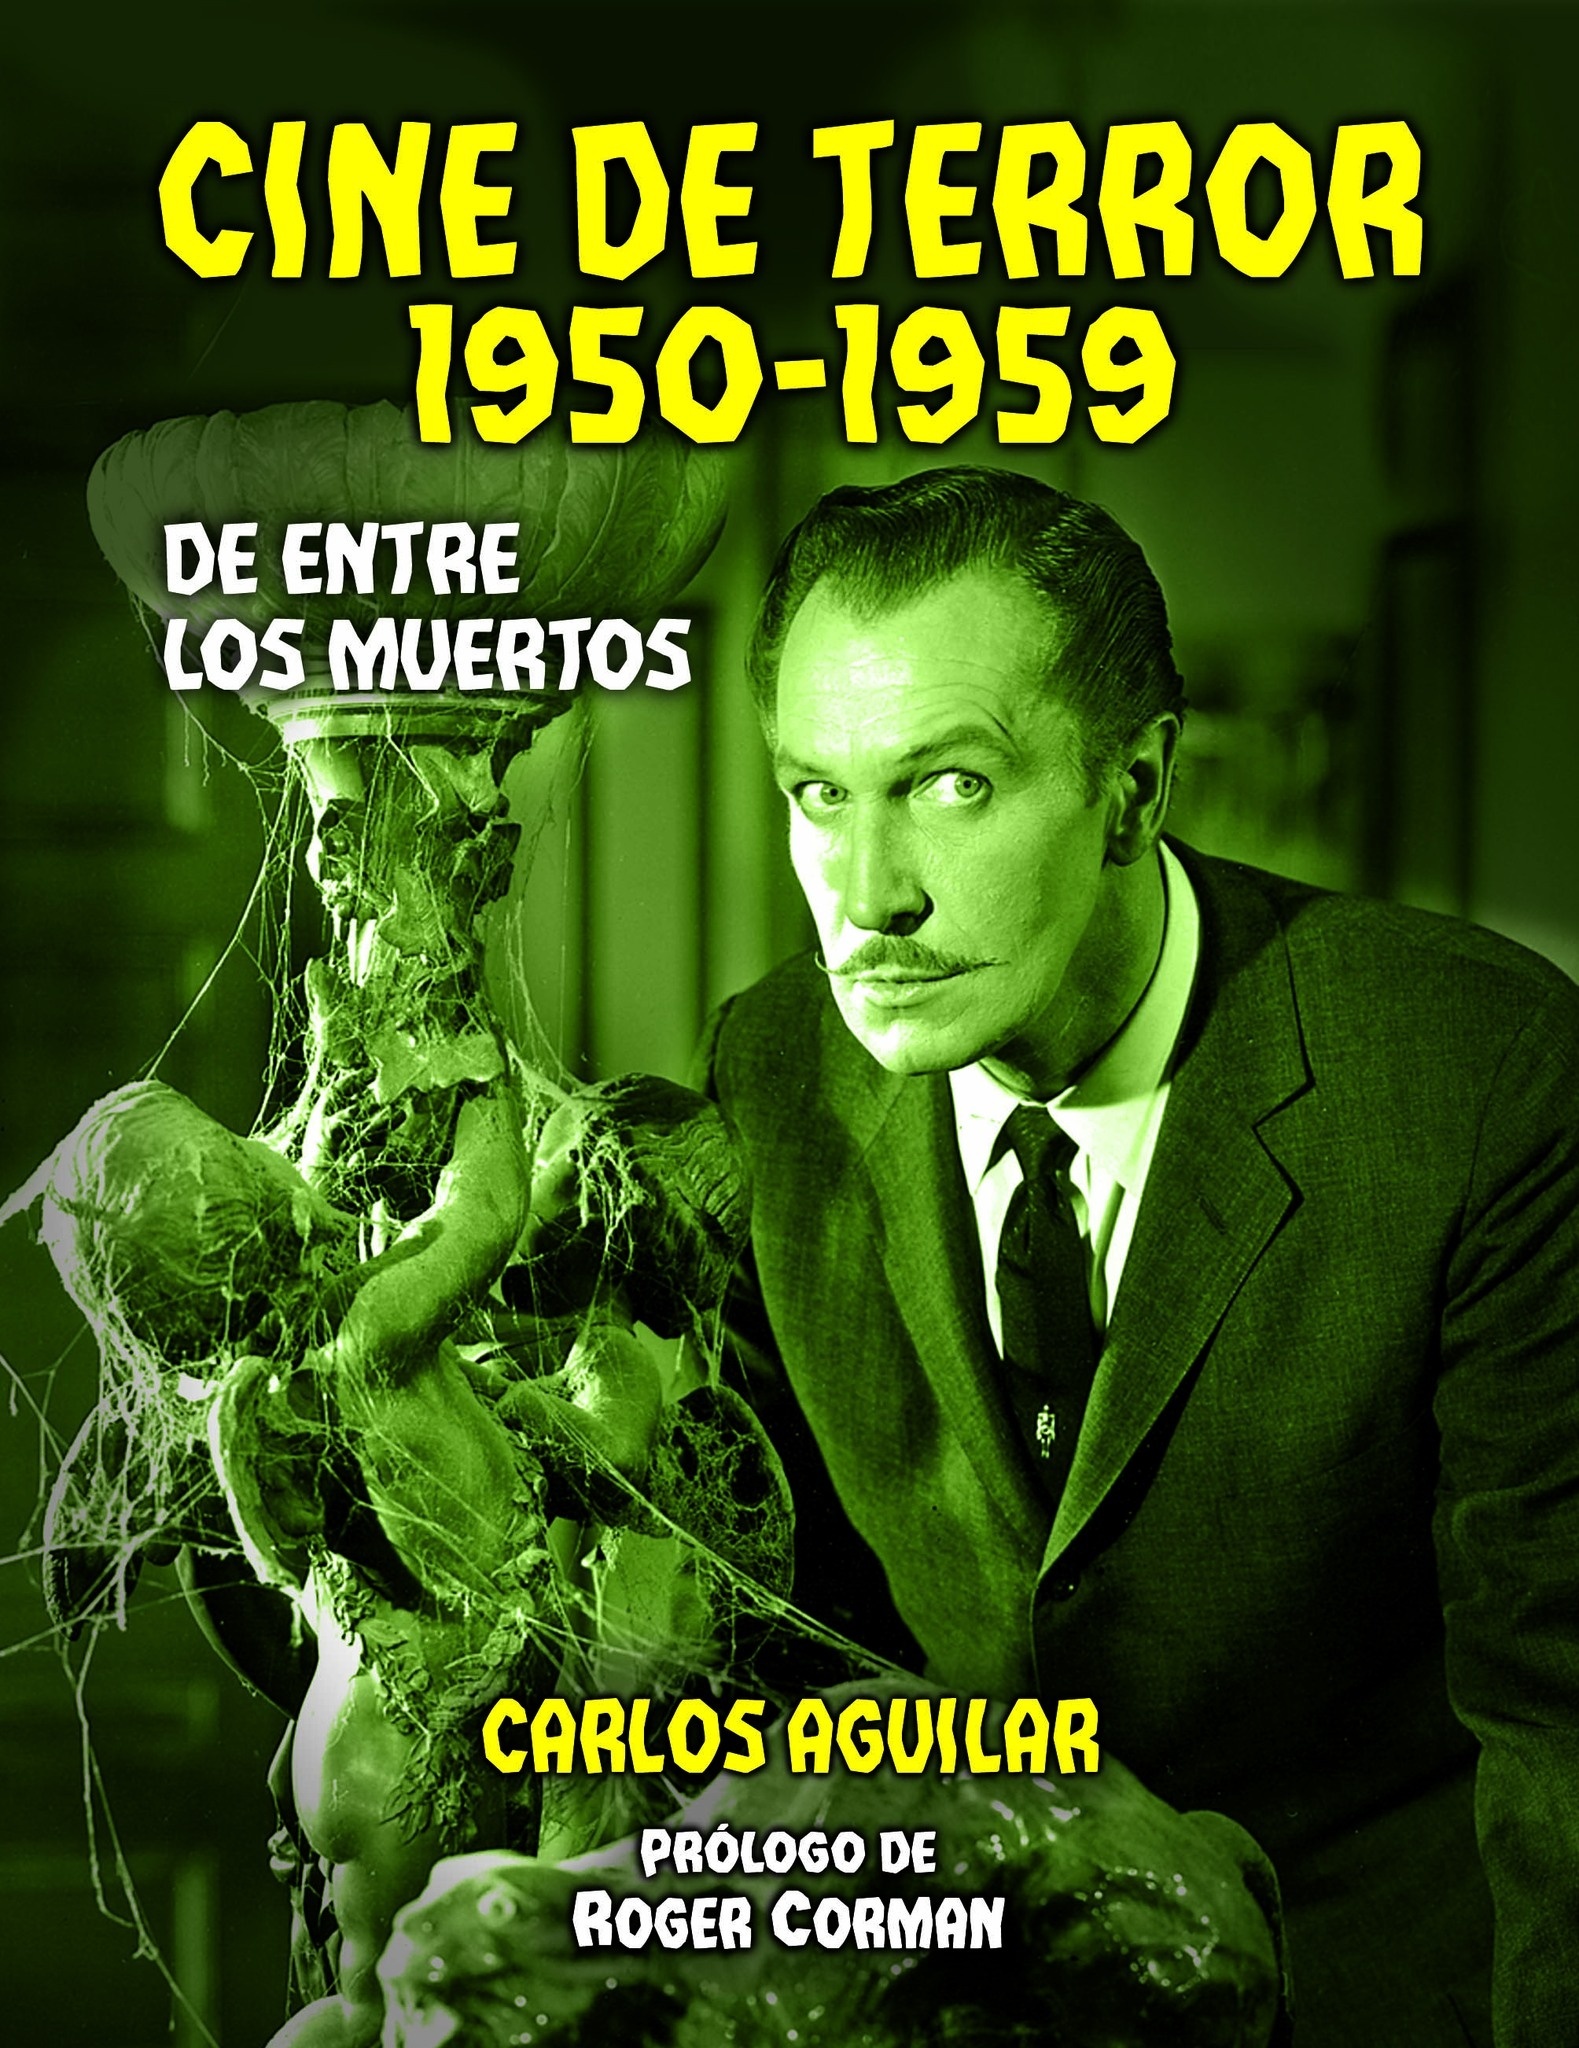 Cine de terror 1950-1959 "De entre los muertos"